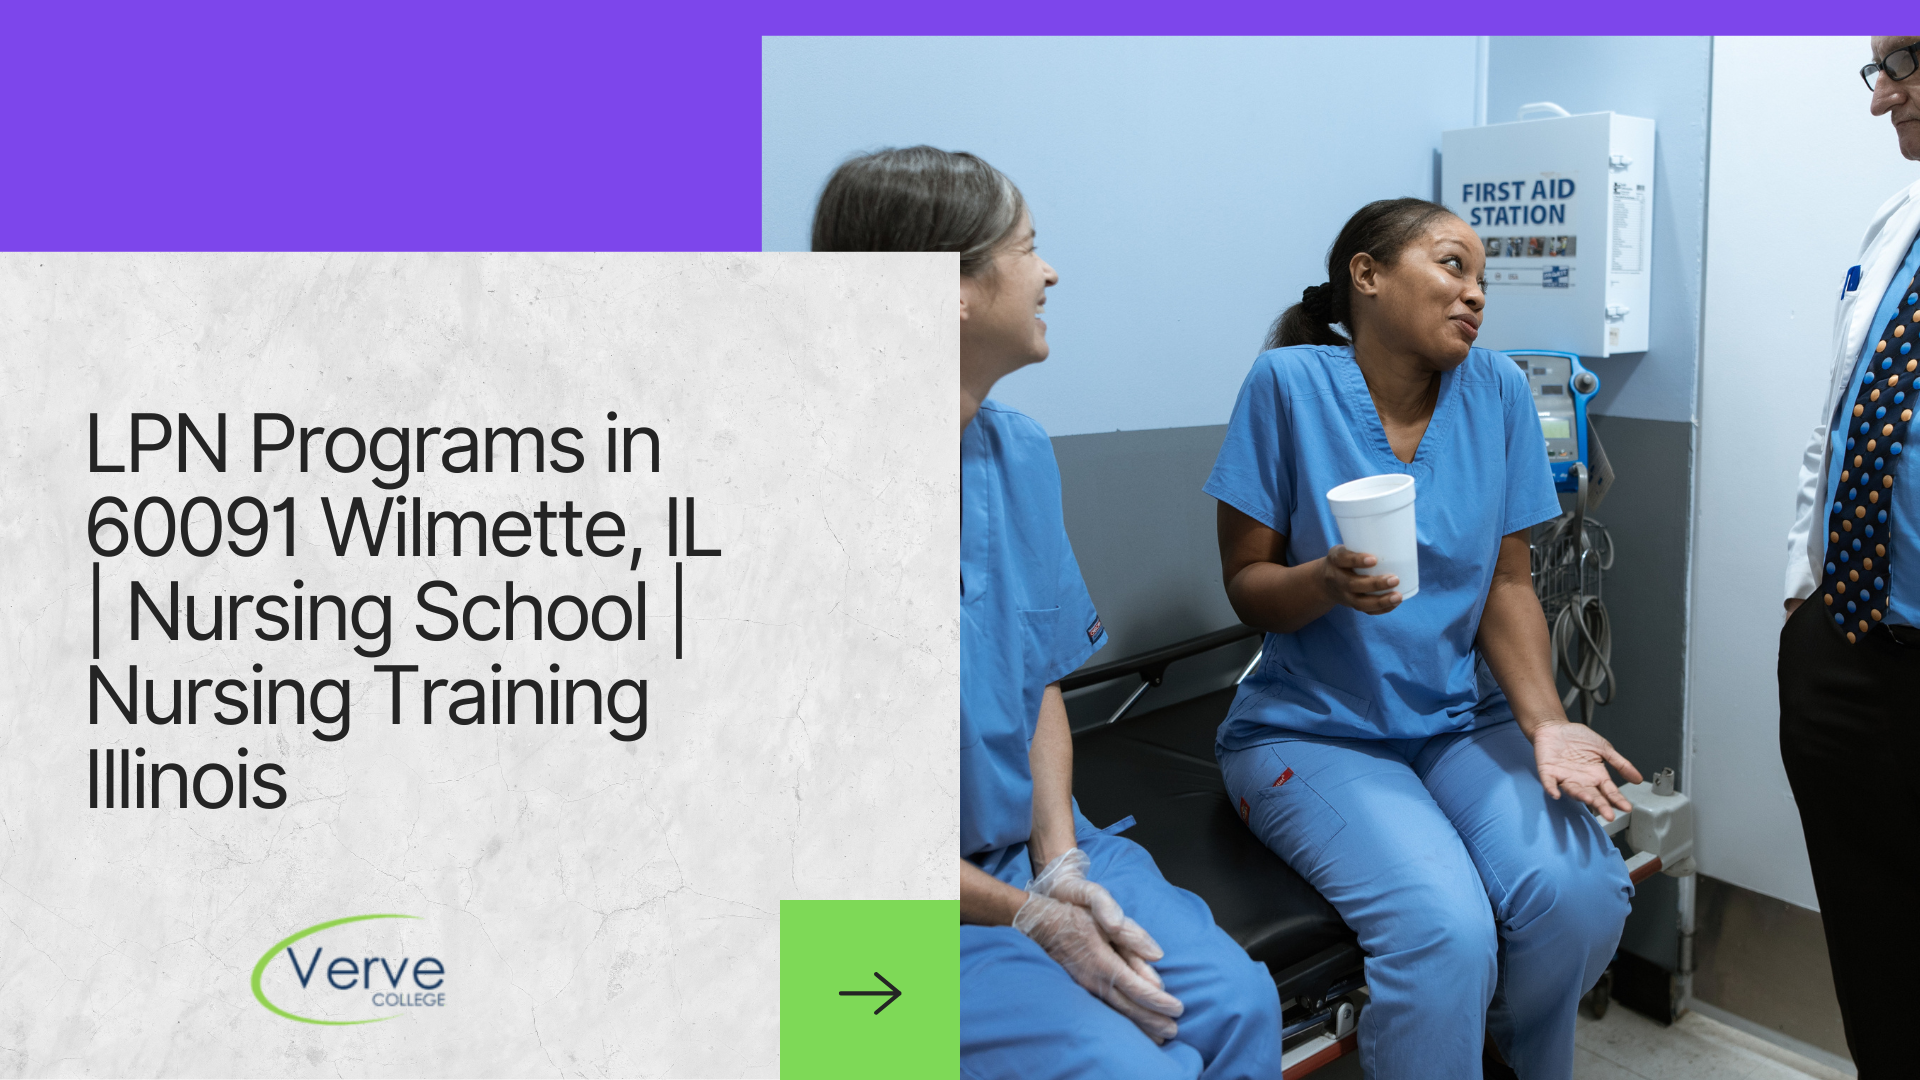 LPN Programs in 60091 Wilmette, IL | Nursing School | Nursing Training Illinois